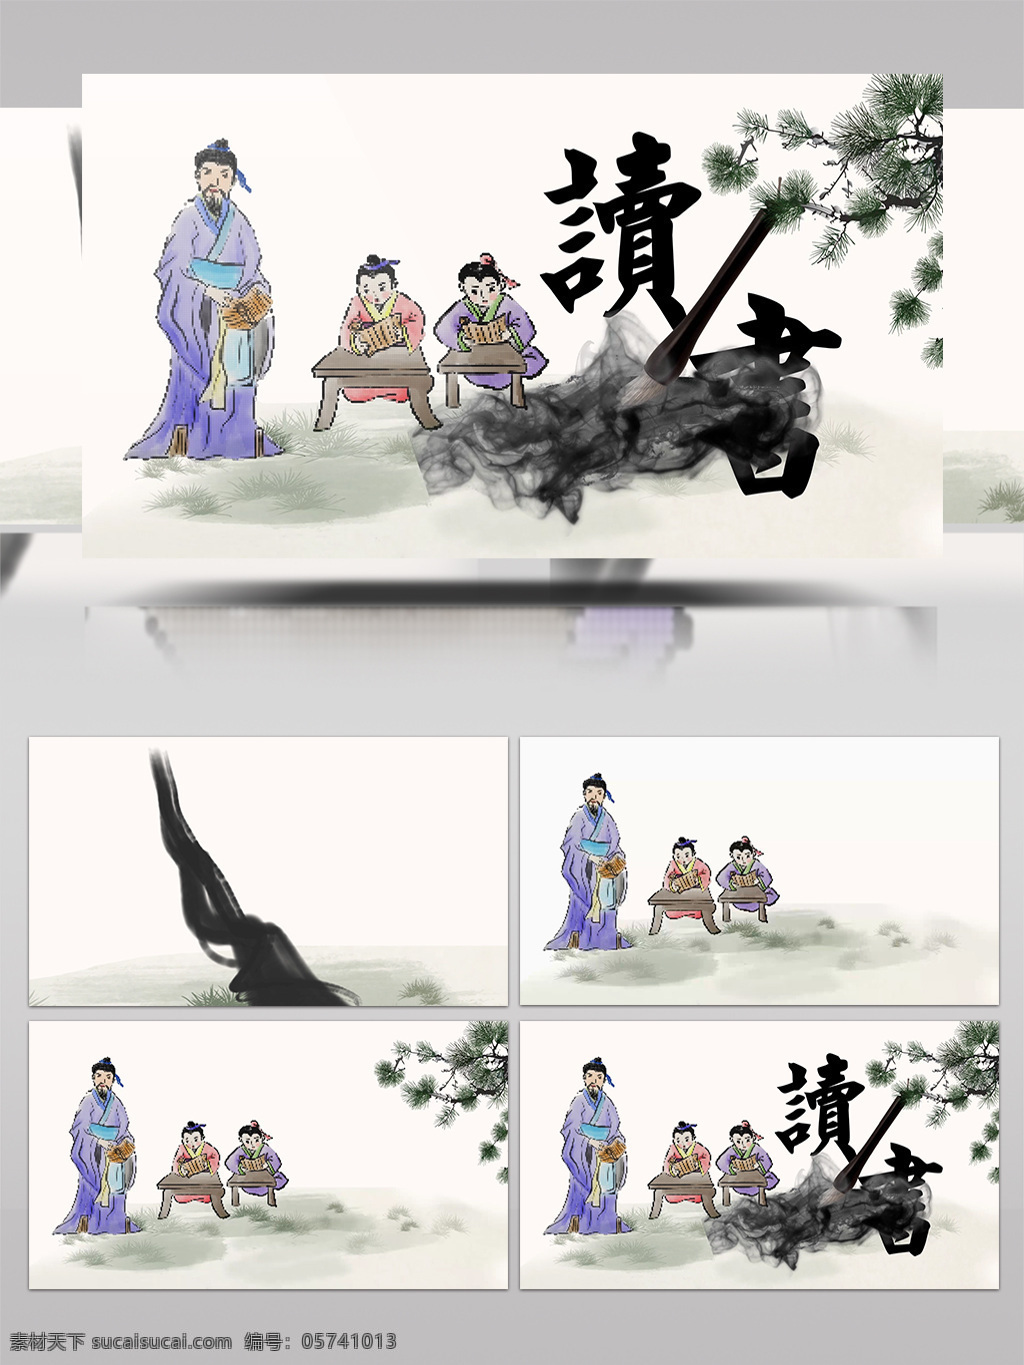 中华 传统 美德 宣传 读书 类 公益 视频 展示 古代 传承 aecc 童子 学童